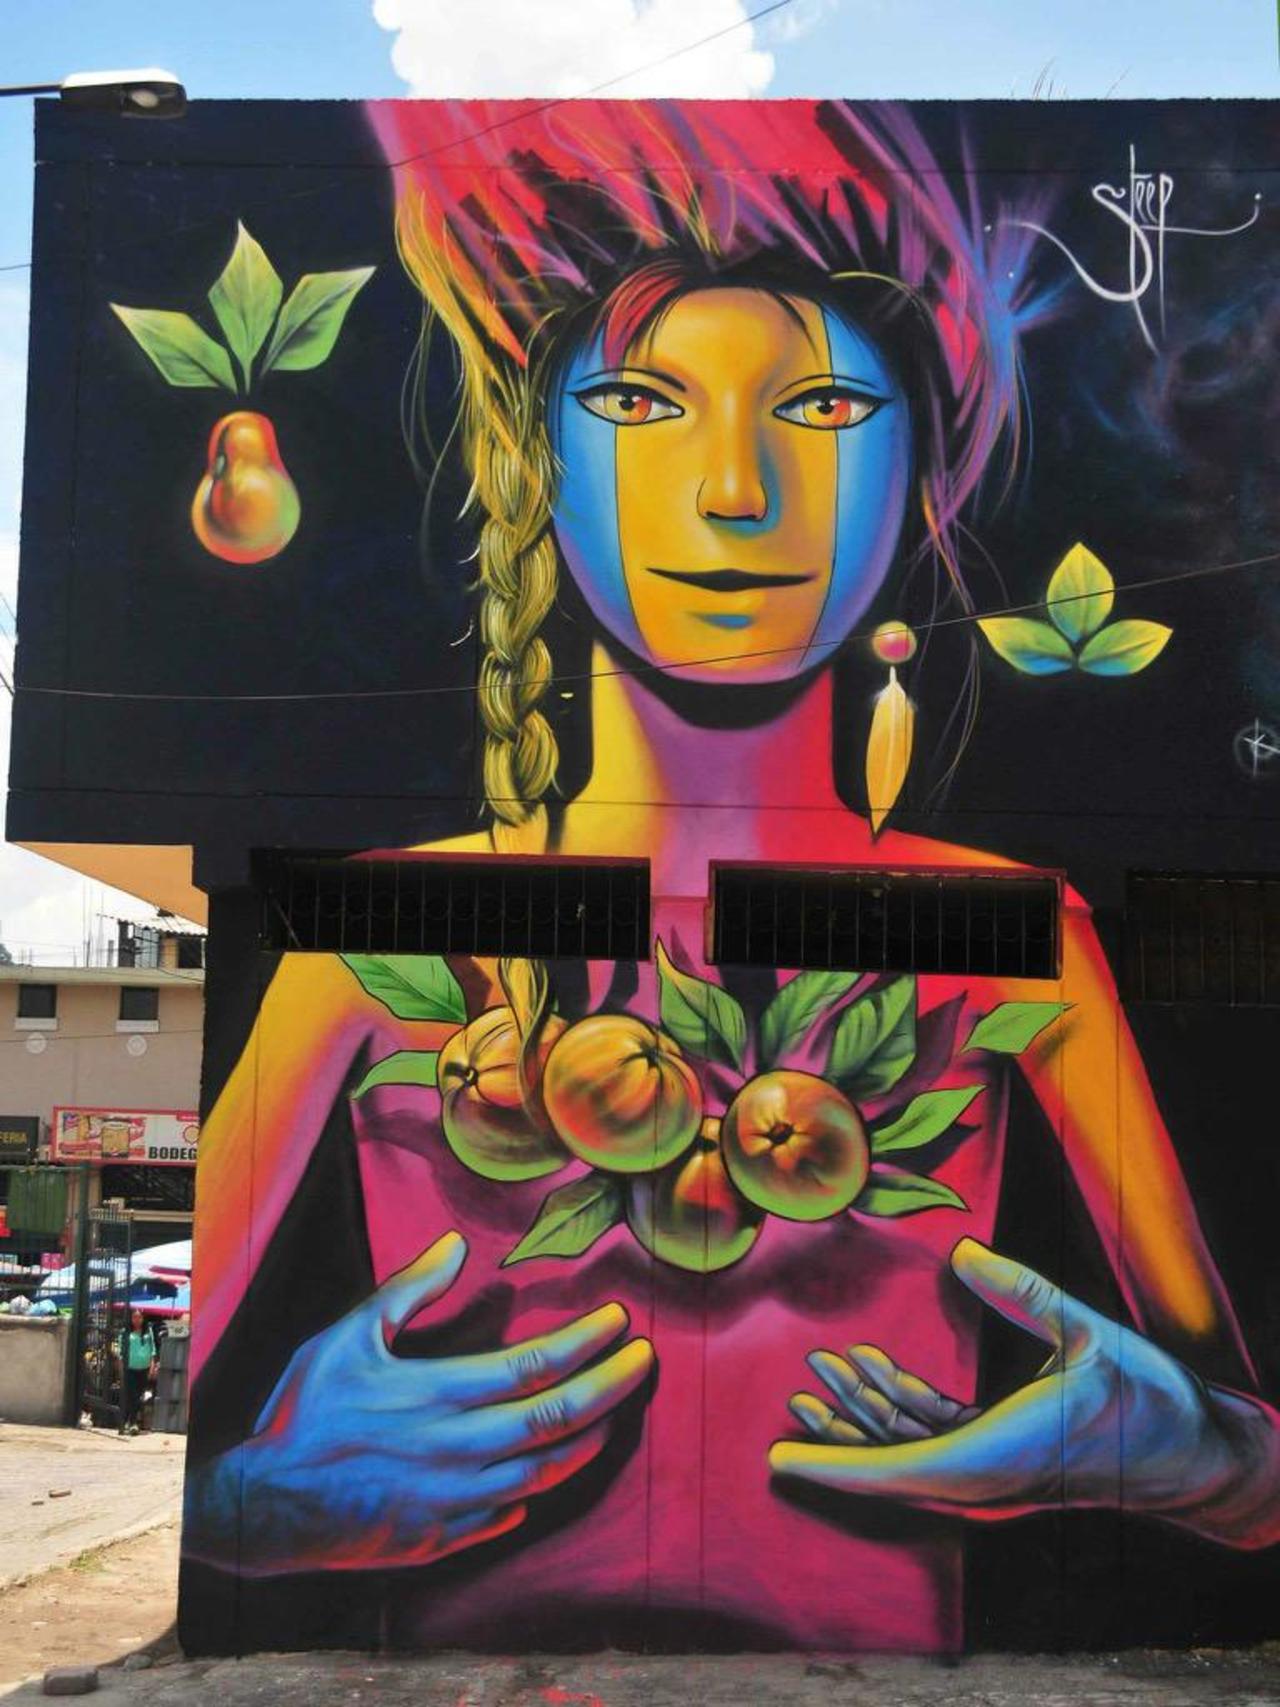 Street Art by Steep

#art #graffiti #mural #streetart http://t.co/RxCDNJvC2F